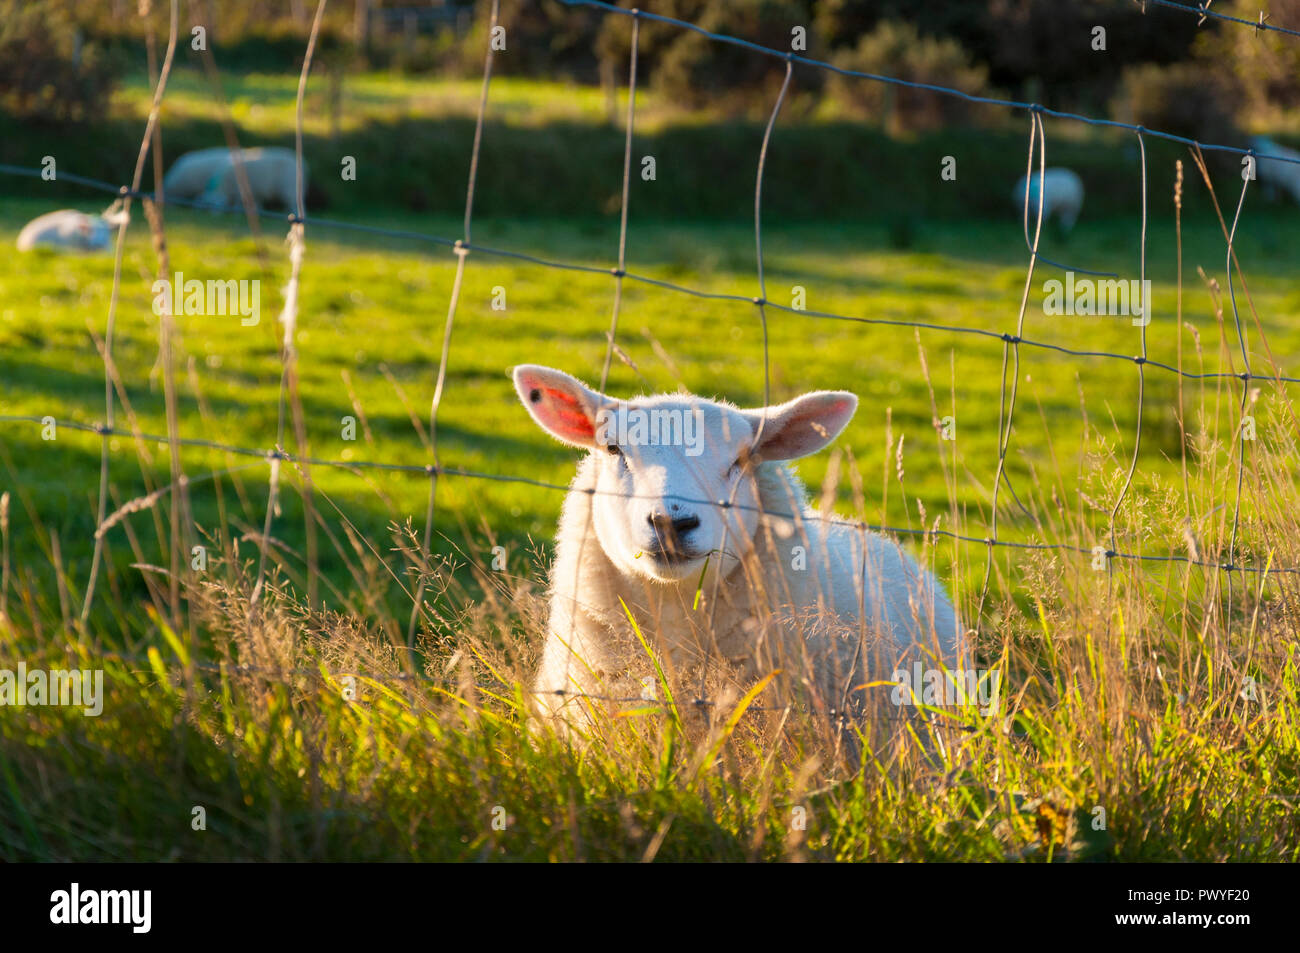 Ovejas en un campo, temprano por la mañana, en el condado de Donegal, Irlanda Foto de stock